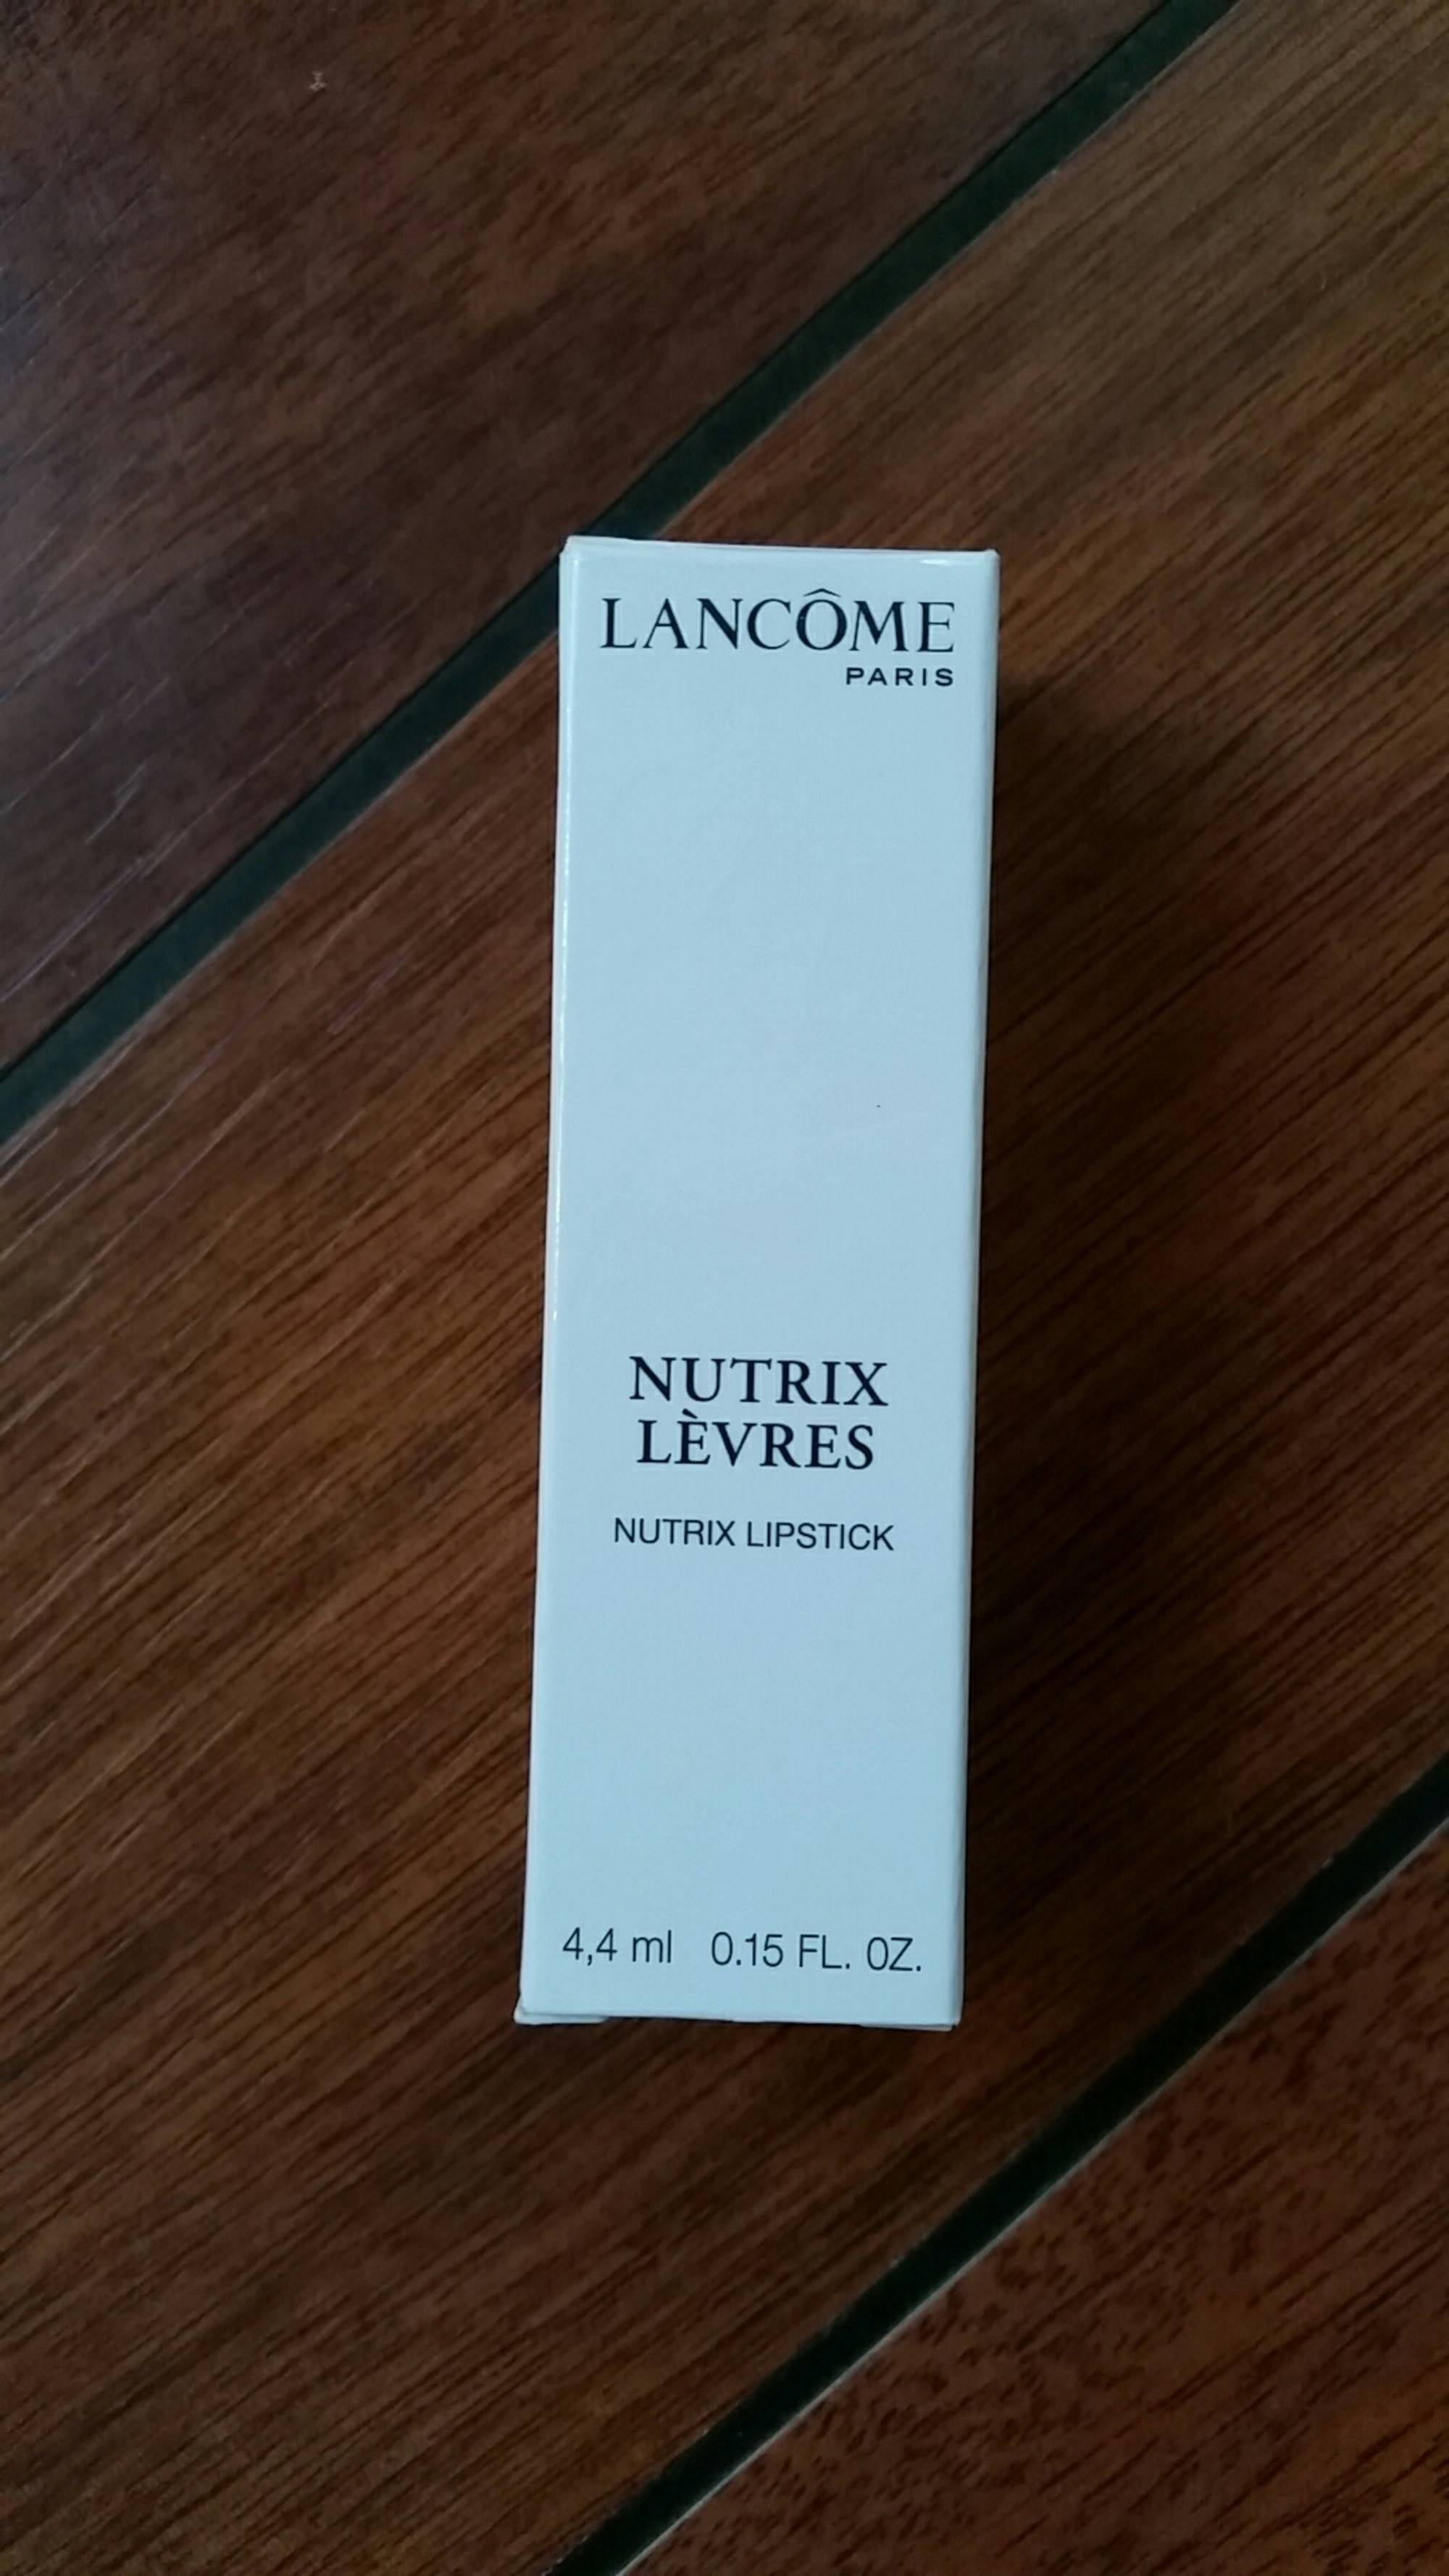 LANCÔME - Nutrix lèvres